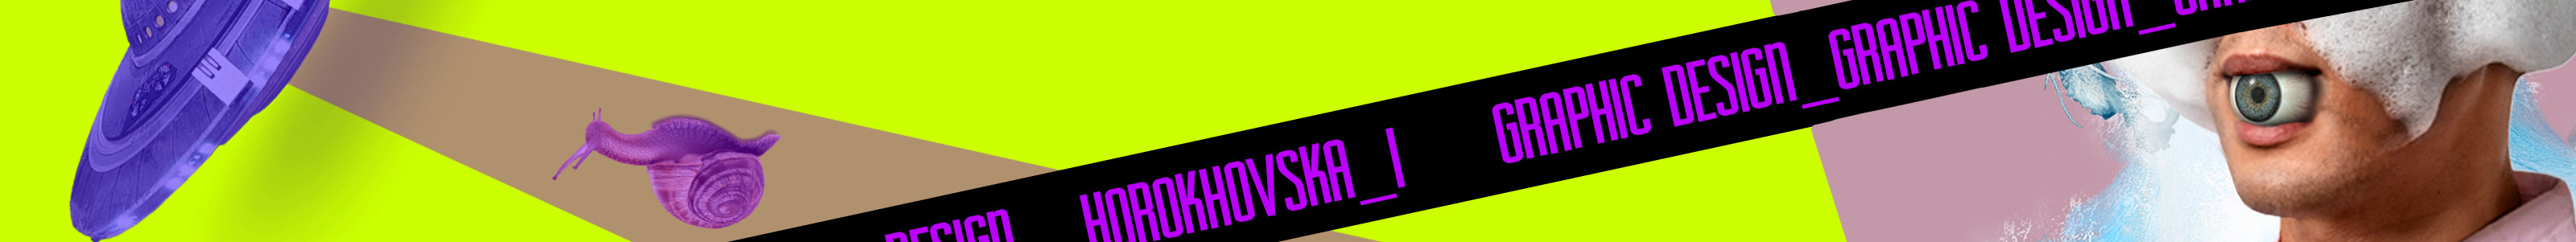 Ira Horokhovska のプロファイルバナー